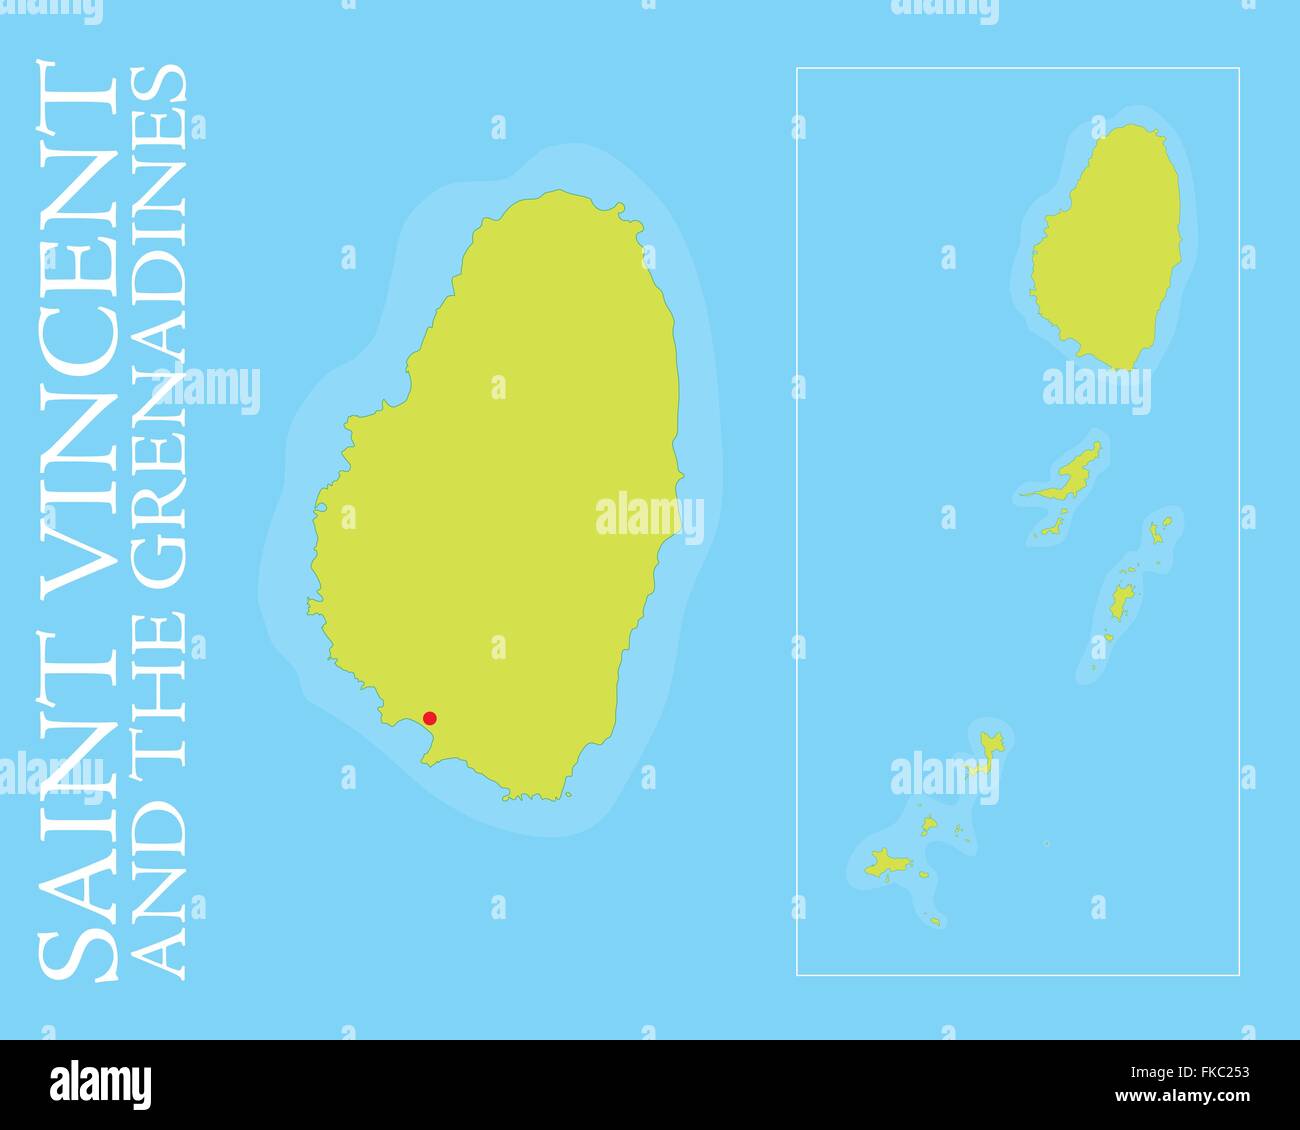 Plan de Saint Vincent et les Grenadines archipel dans la mer des Caraïbes. Illustration de Vecteur